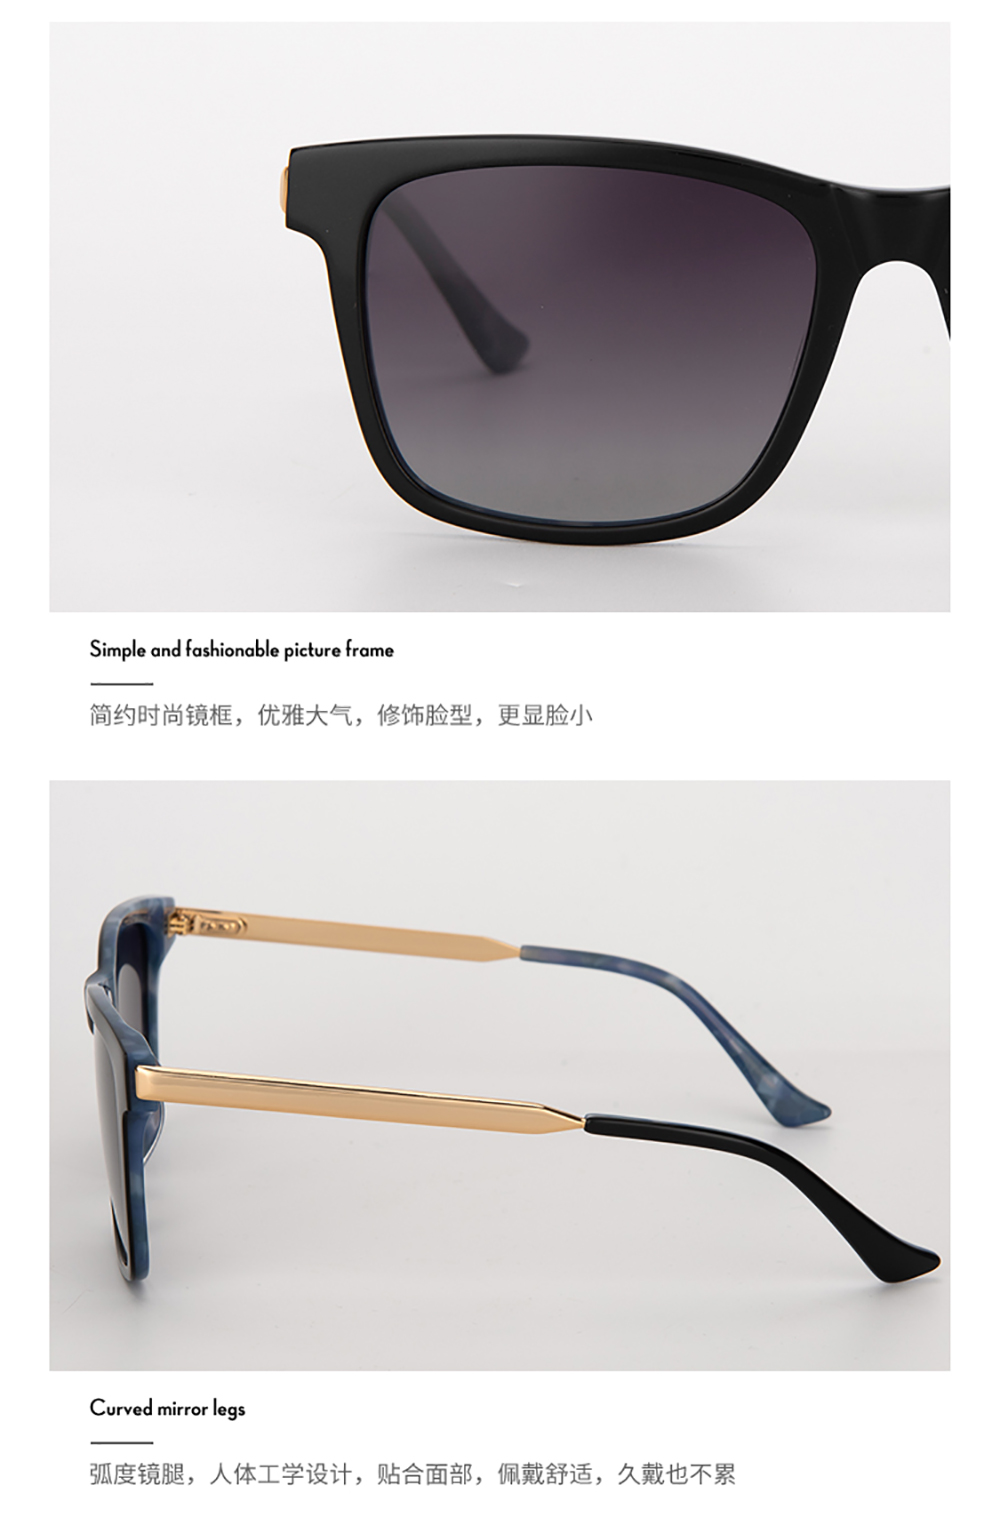 醋酸板材金属眼镜-G4011